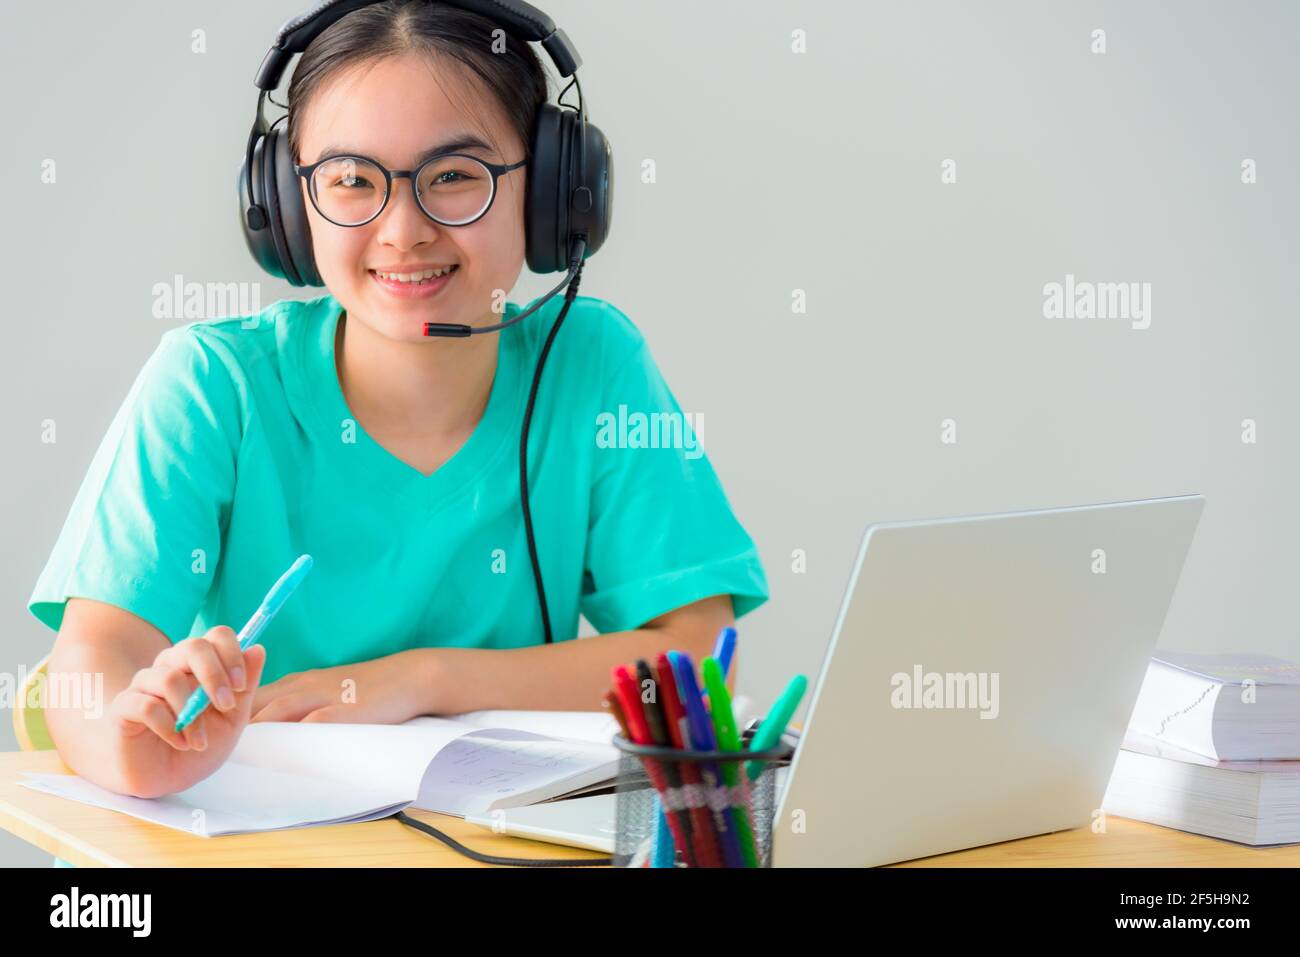 Portrait Asian junge Frau Student Brille Kopfhörer sitzen glücklich Studie Lächeln suchen online Klasse Hochschule Lernen Internet Bildung, Teenage g Stockfoto